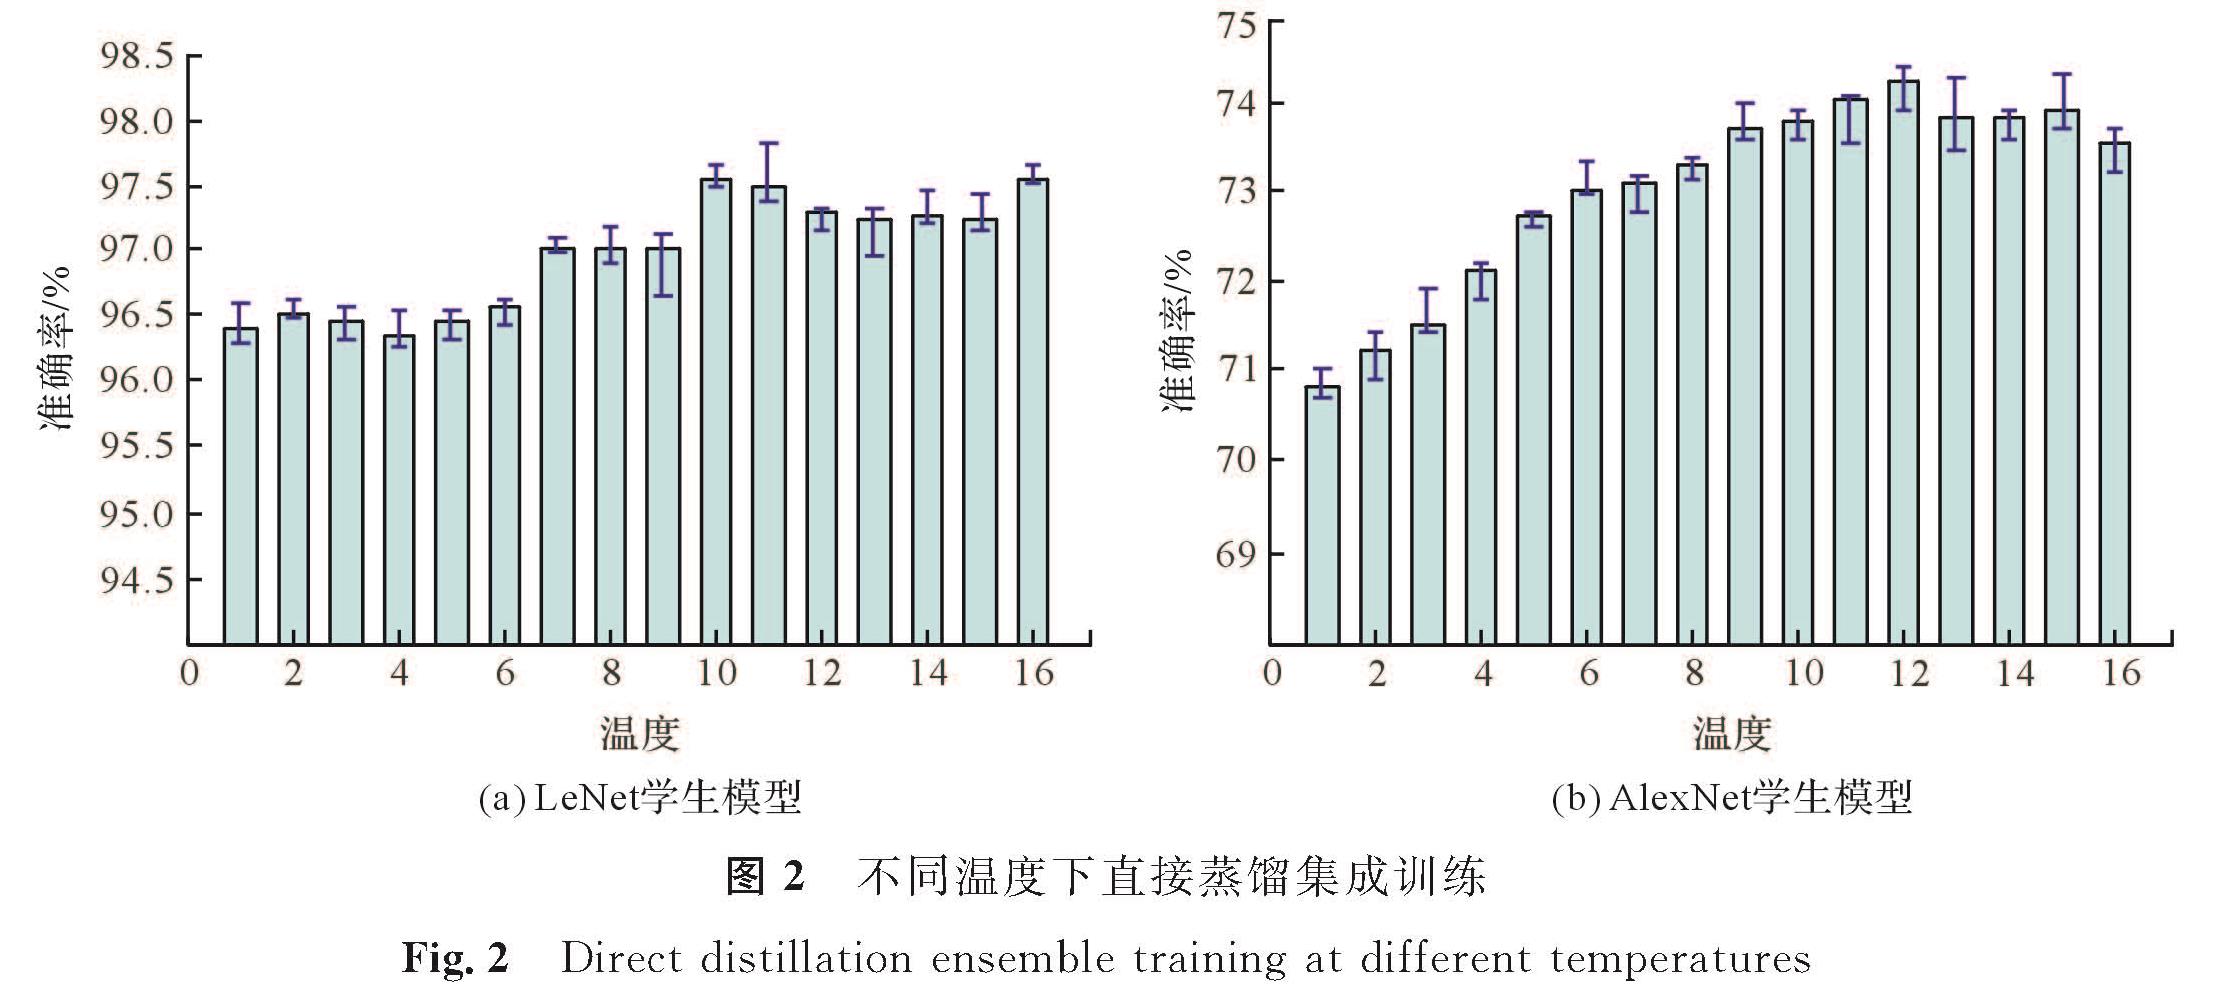 图2 不同温度下直接蒸馏集成训练<br/>Fig.2 Direct distillation ensemble training at different temperatures